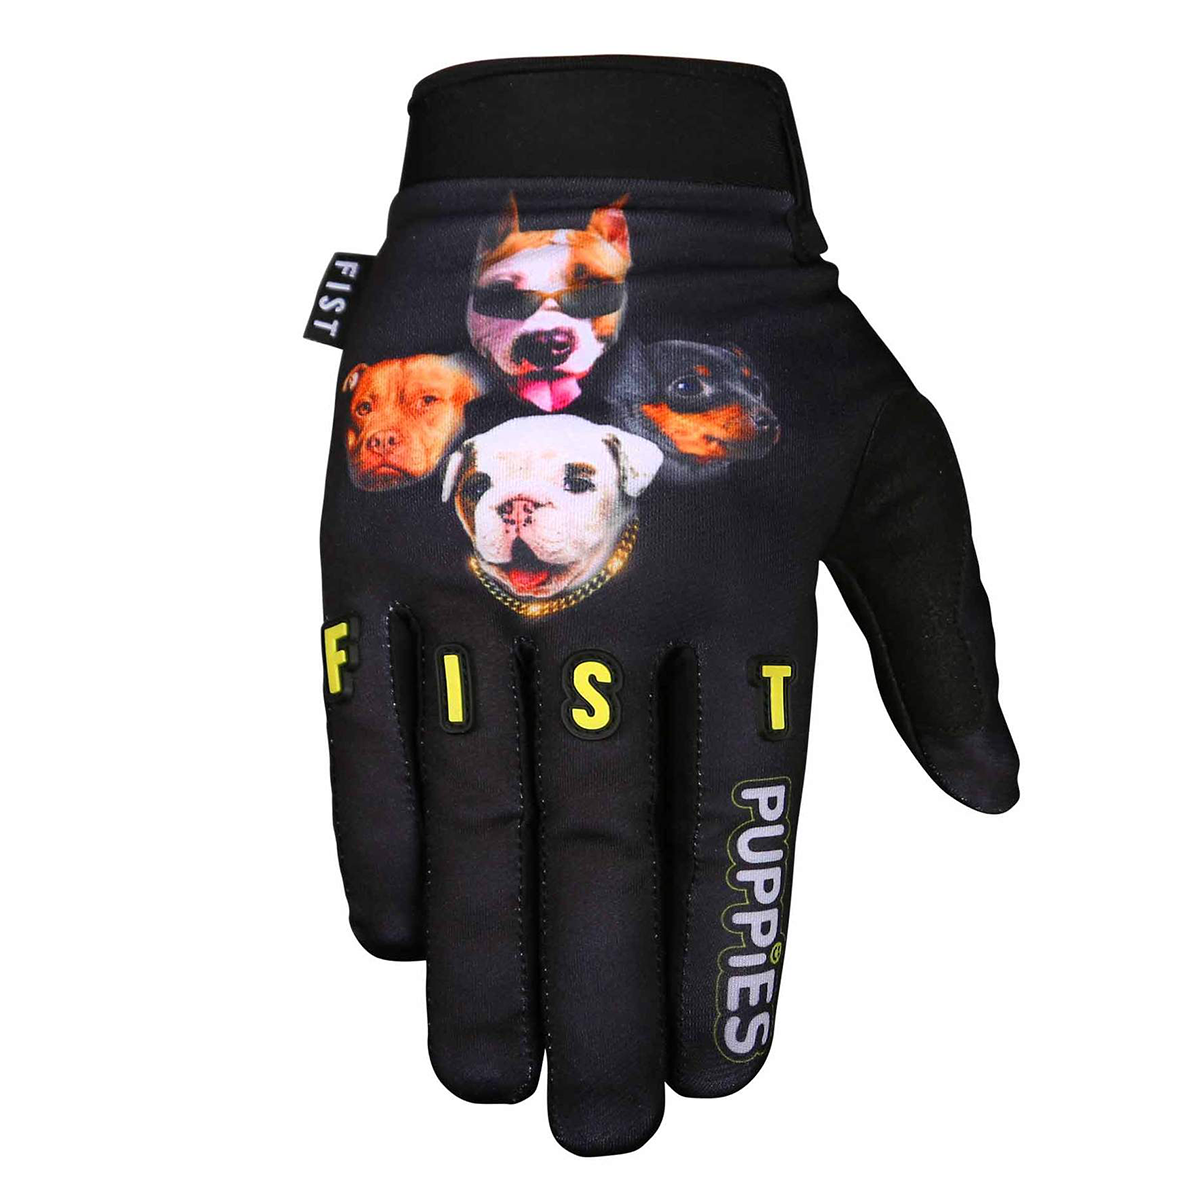 Fist Puppies Gloves